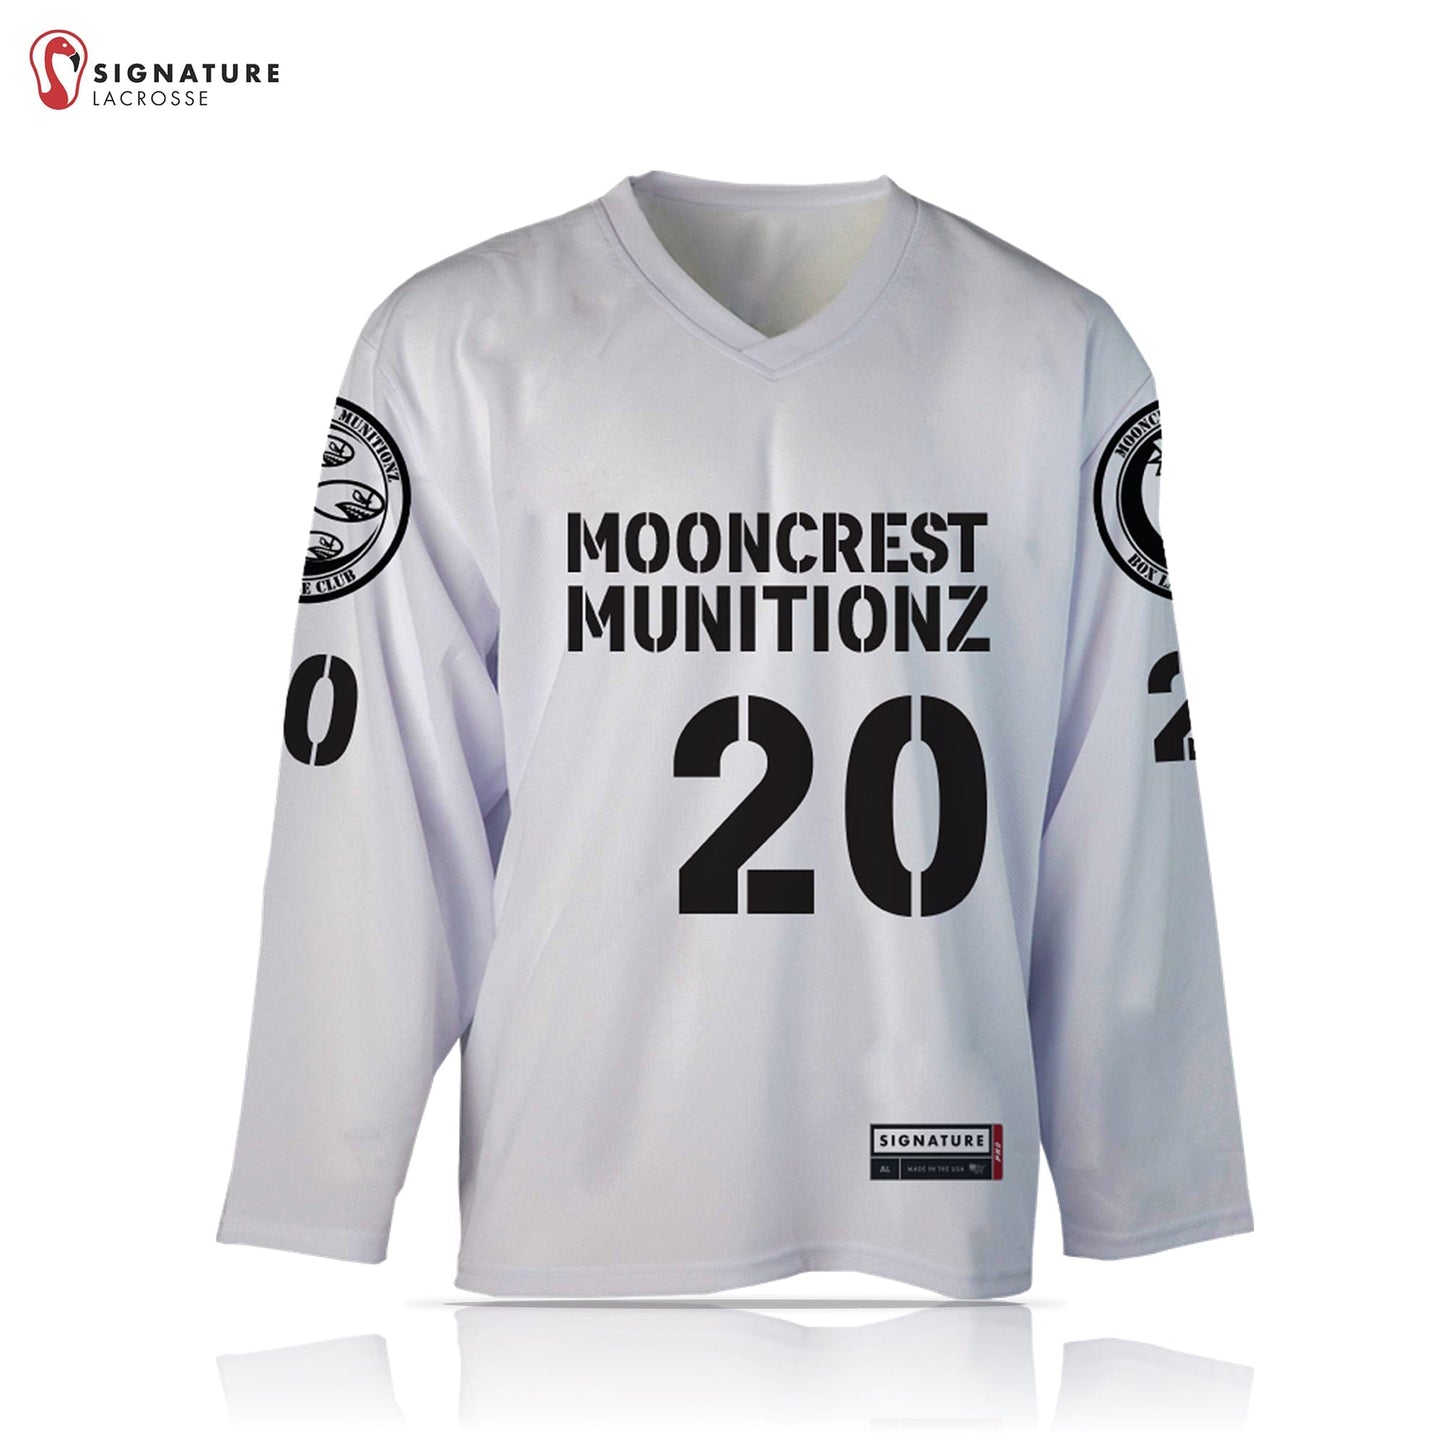 Mooncrest Munitionz Box Lacrosse Men’s White Pro Box Jersey: N/A Signature Lacrosse